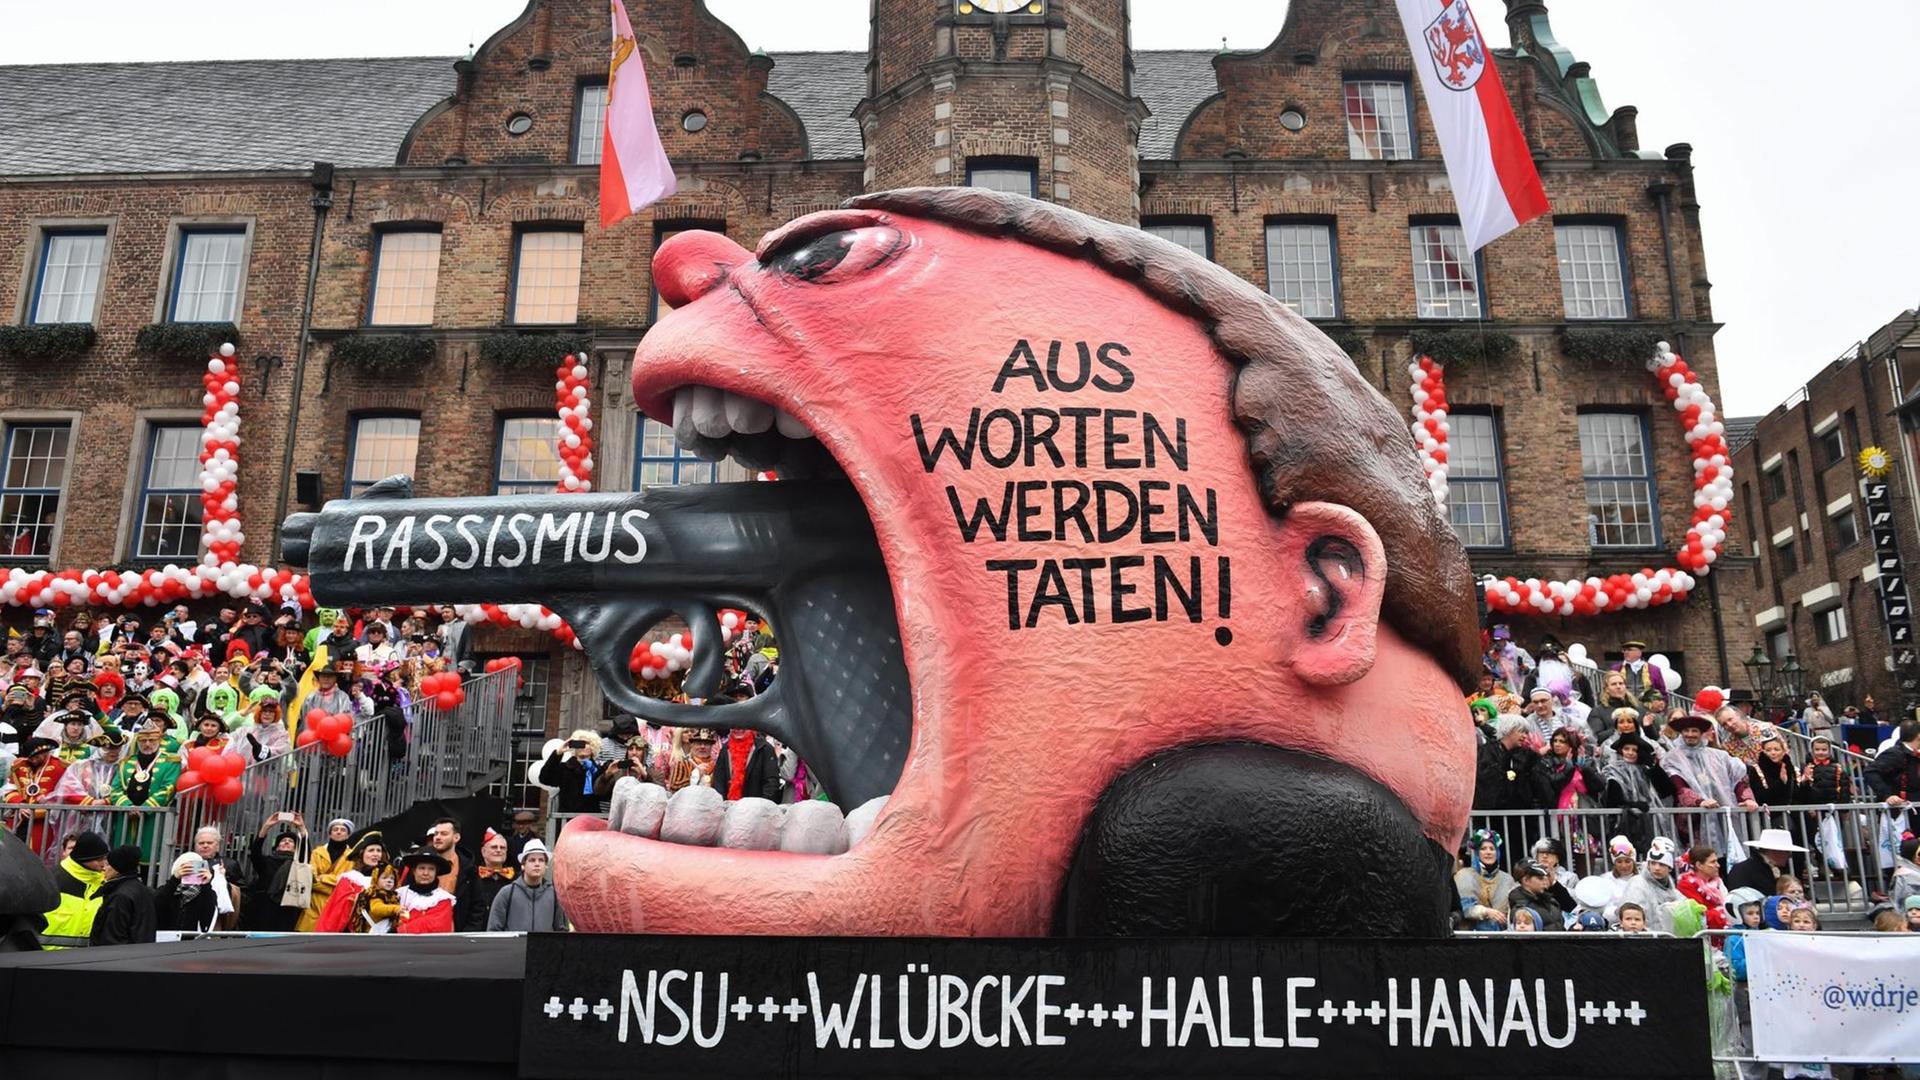 Ein Motivwagen des Rosenmontagzugs in Düsseldorf zeigt den Lauf einer Pistole, die aus einem Rachen ragt: "Rassismus - Aus Worten werden Taten!"